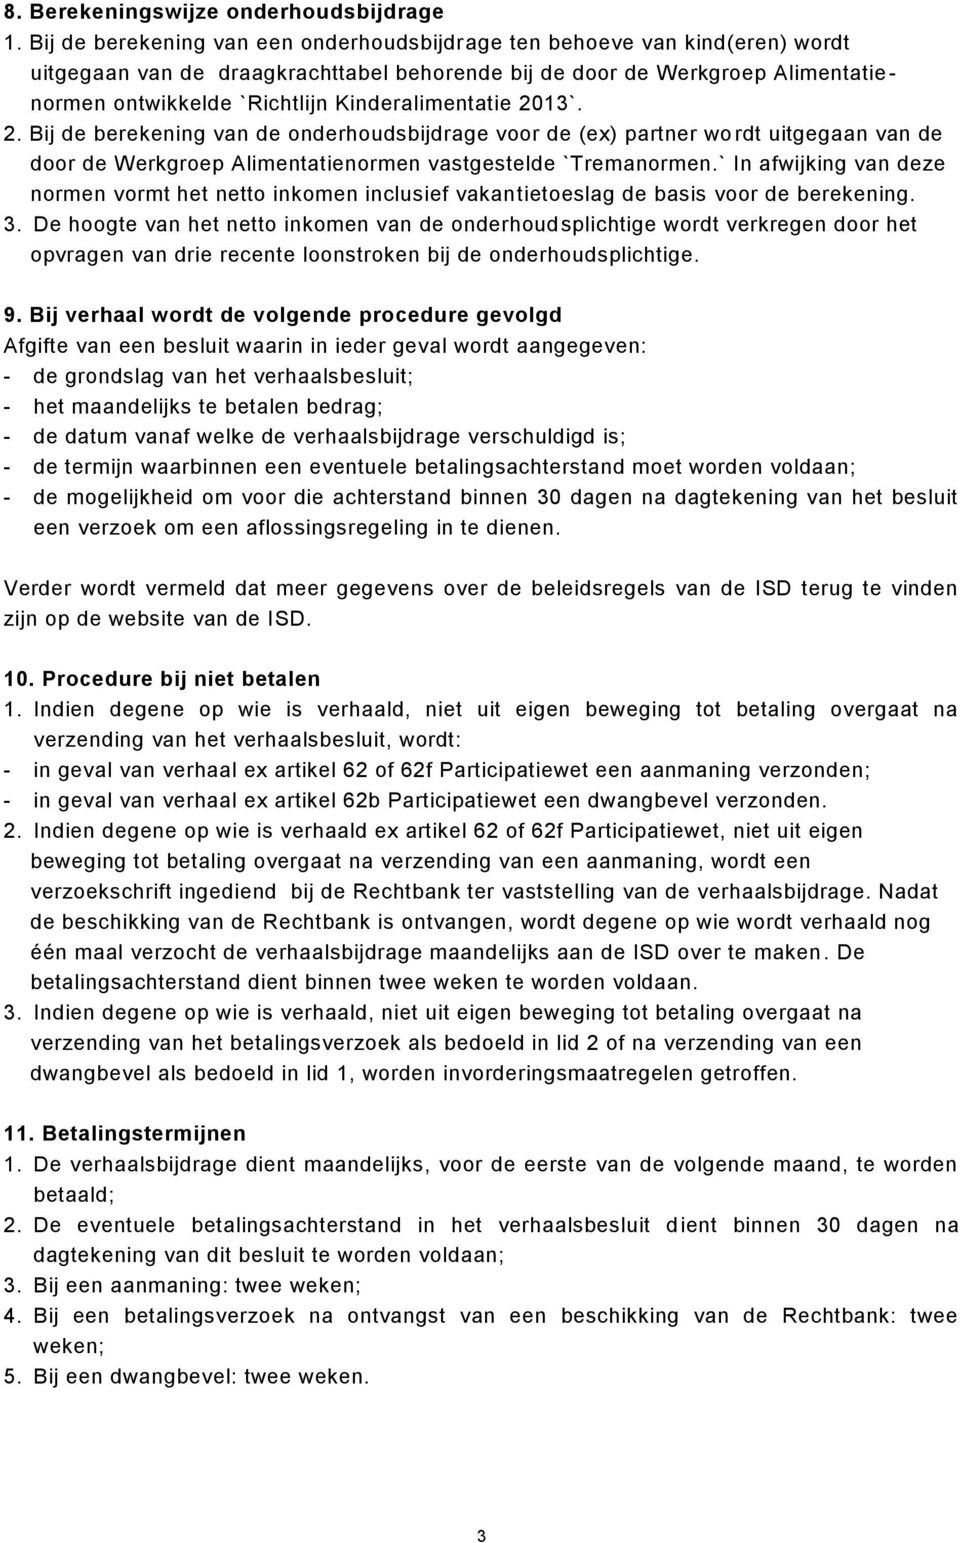 Kinderalimentatie 2013`. 2. Bij de berekening van de onderhoudsbijdrage voor de (ex) partner wo rdt uitgegaan van de door de Werkgroep Alimentatienormen vastgestelde `Tremanormen.